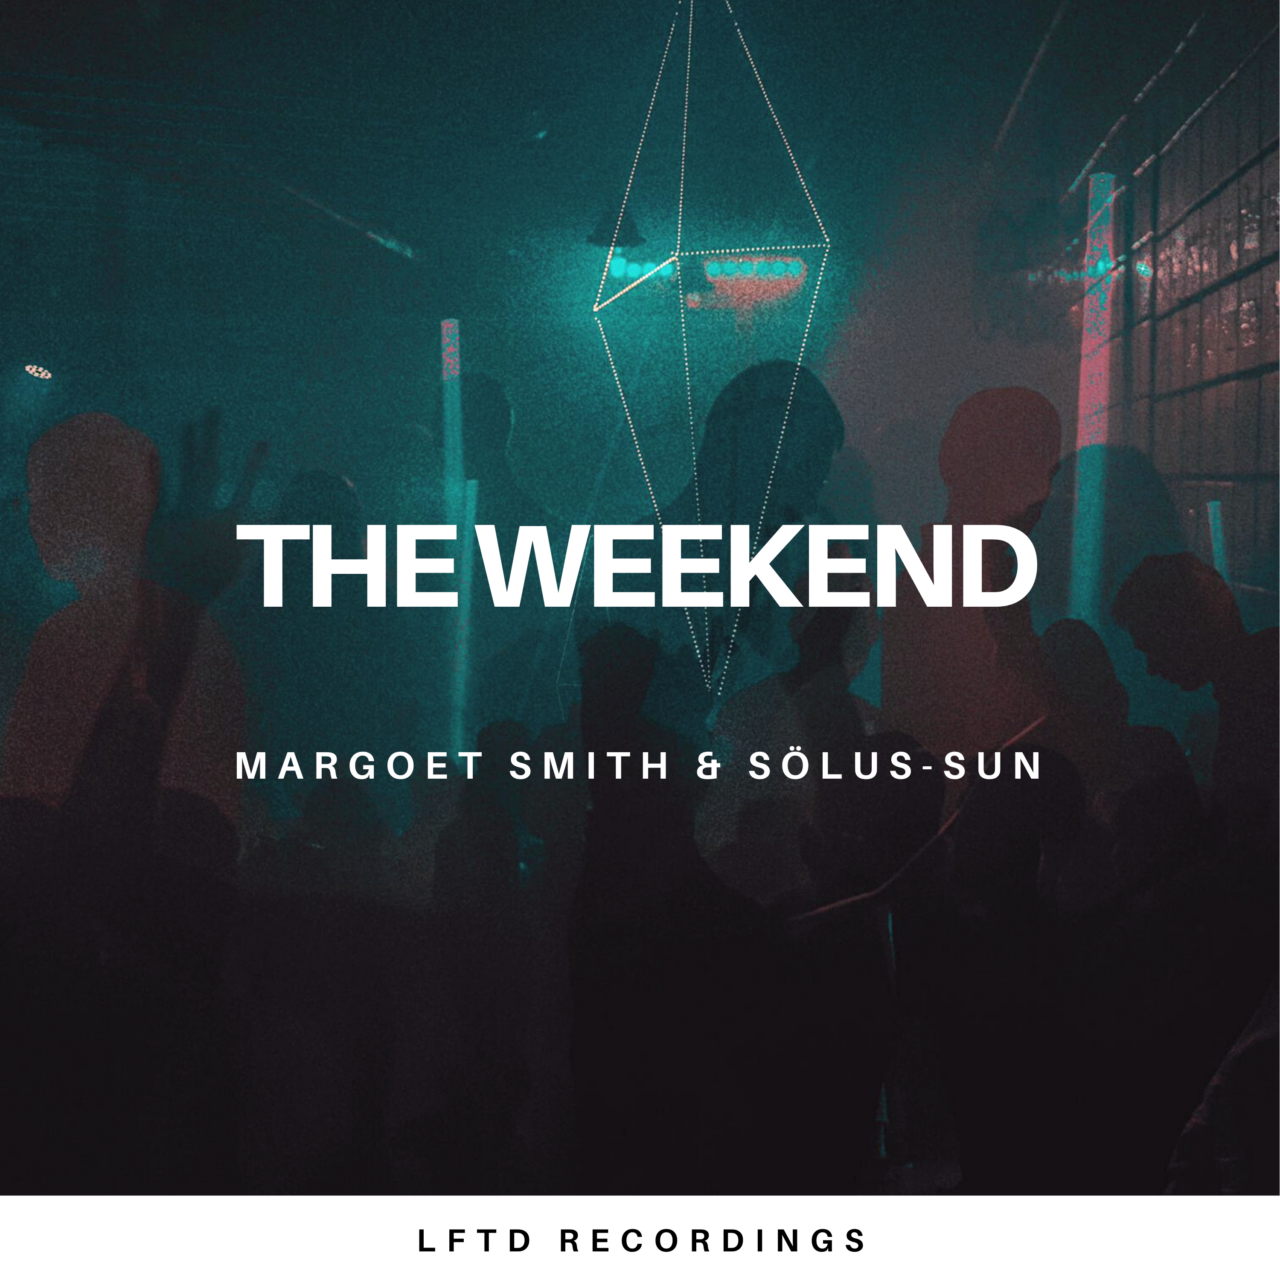 Margoet Smith & Sölus-Sun veröffentlichen Hymne fürs “Weekend”